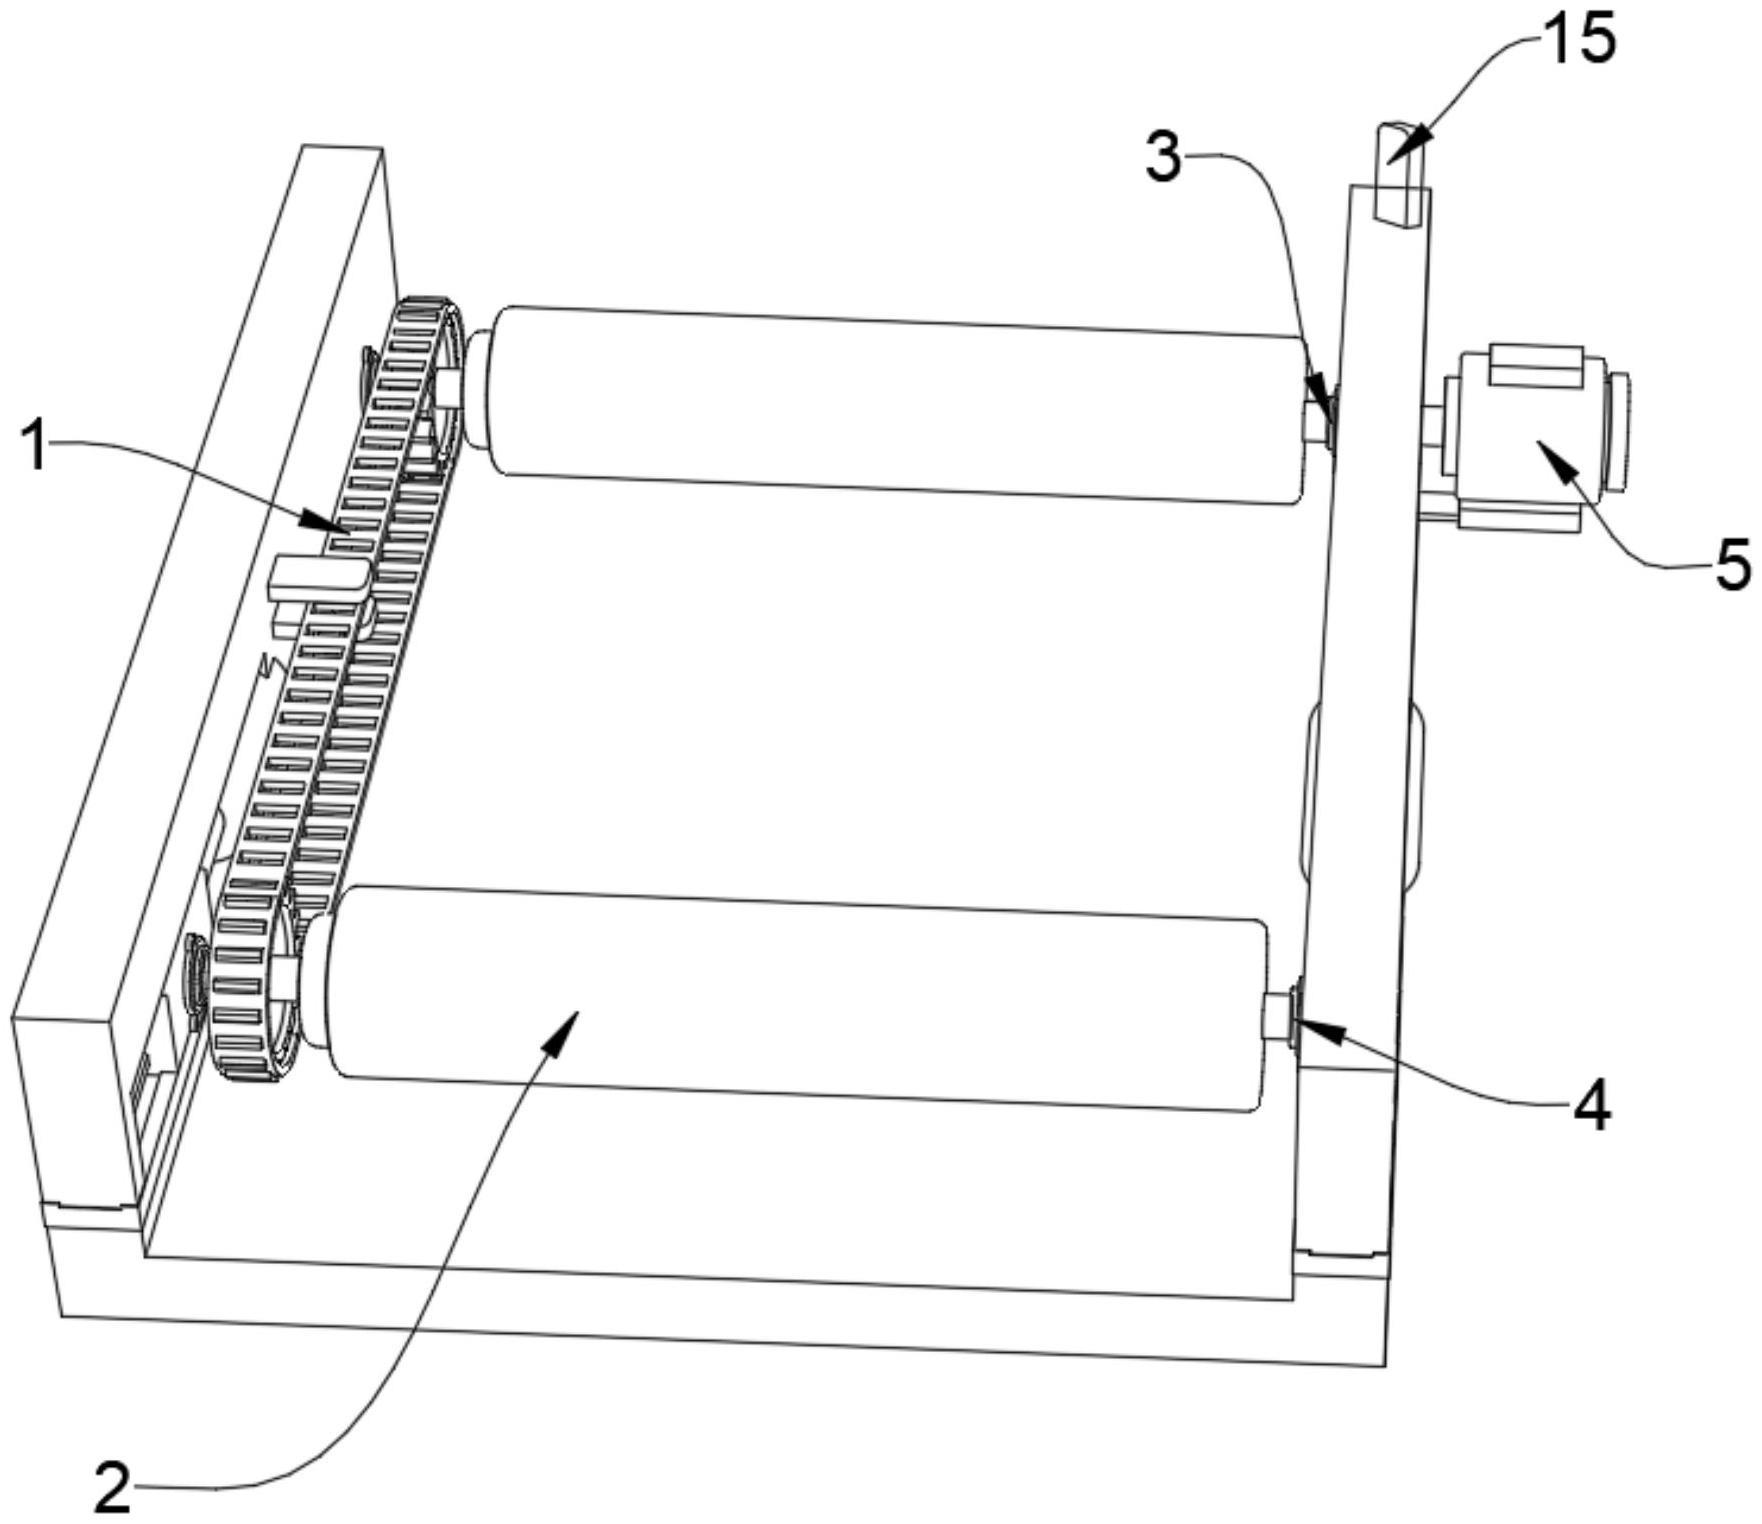 链条松紧度自测量及其对应的松紧度自调节装置的制作方法